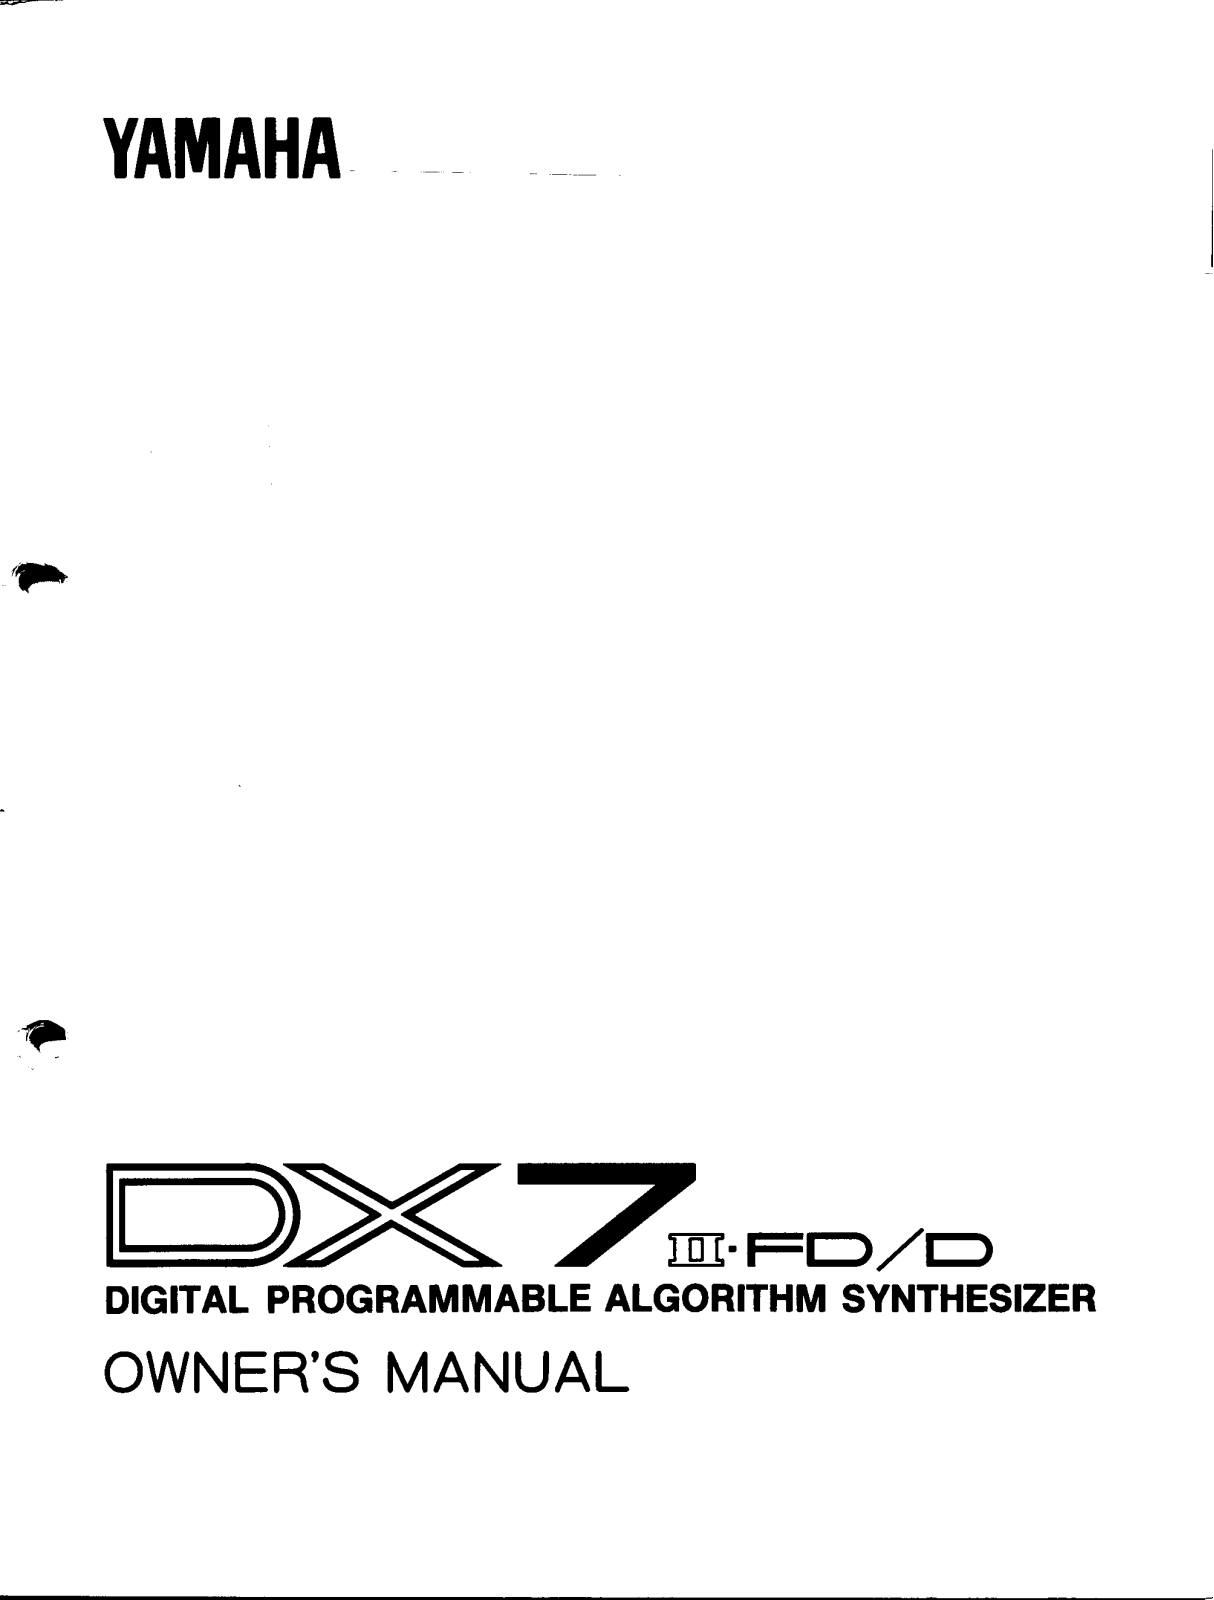 Yamaha DX7 II FD User Manual